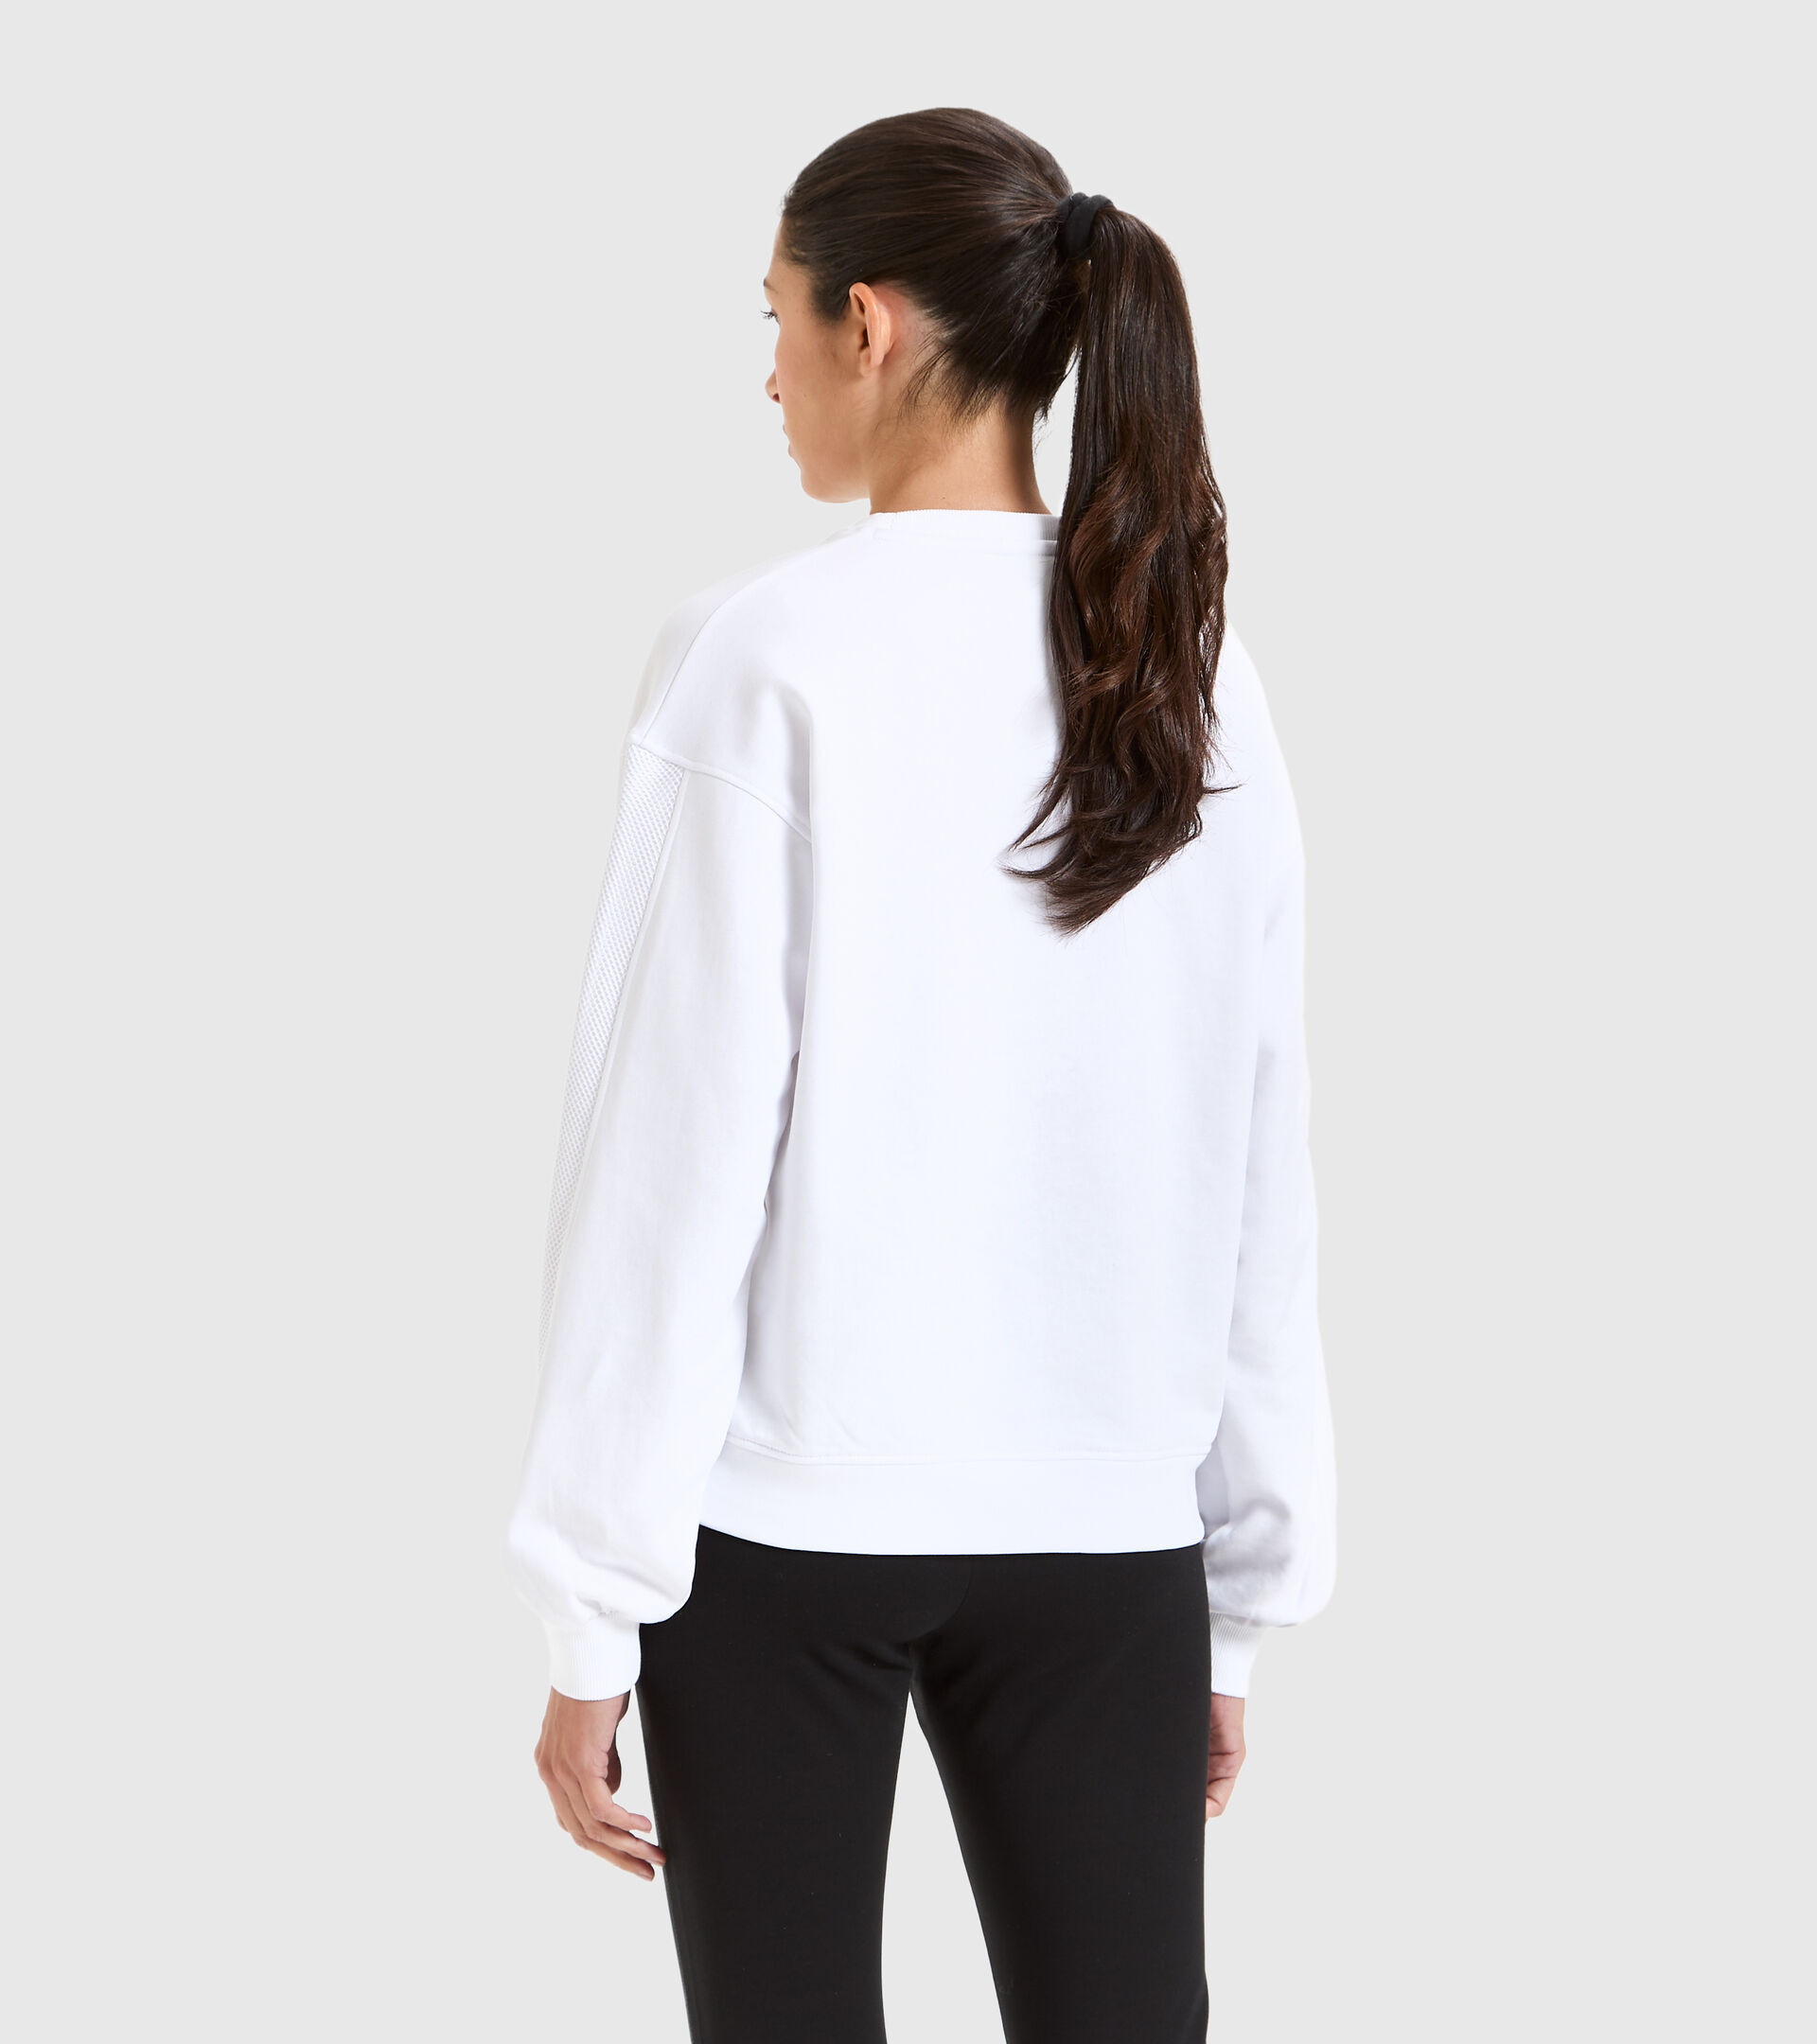 Sportliches Baumwoll-Sweatshirt - Damen L.SWEAT FLOSS STRAHLEND WEISSE - Diadora